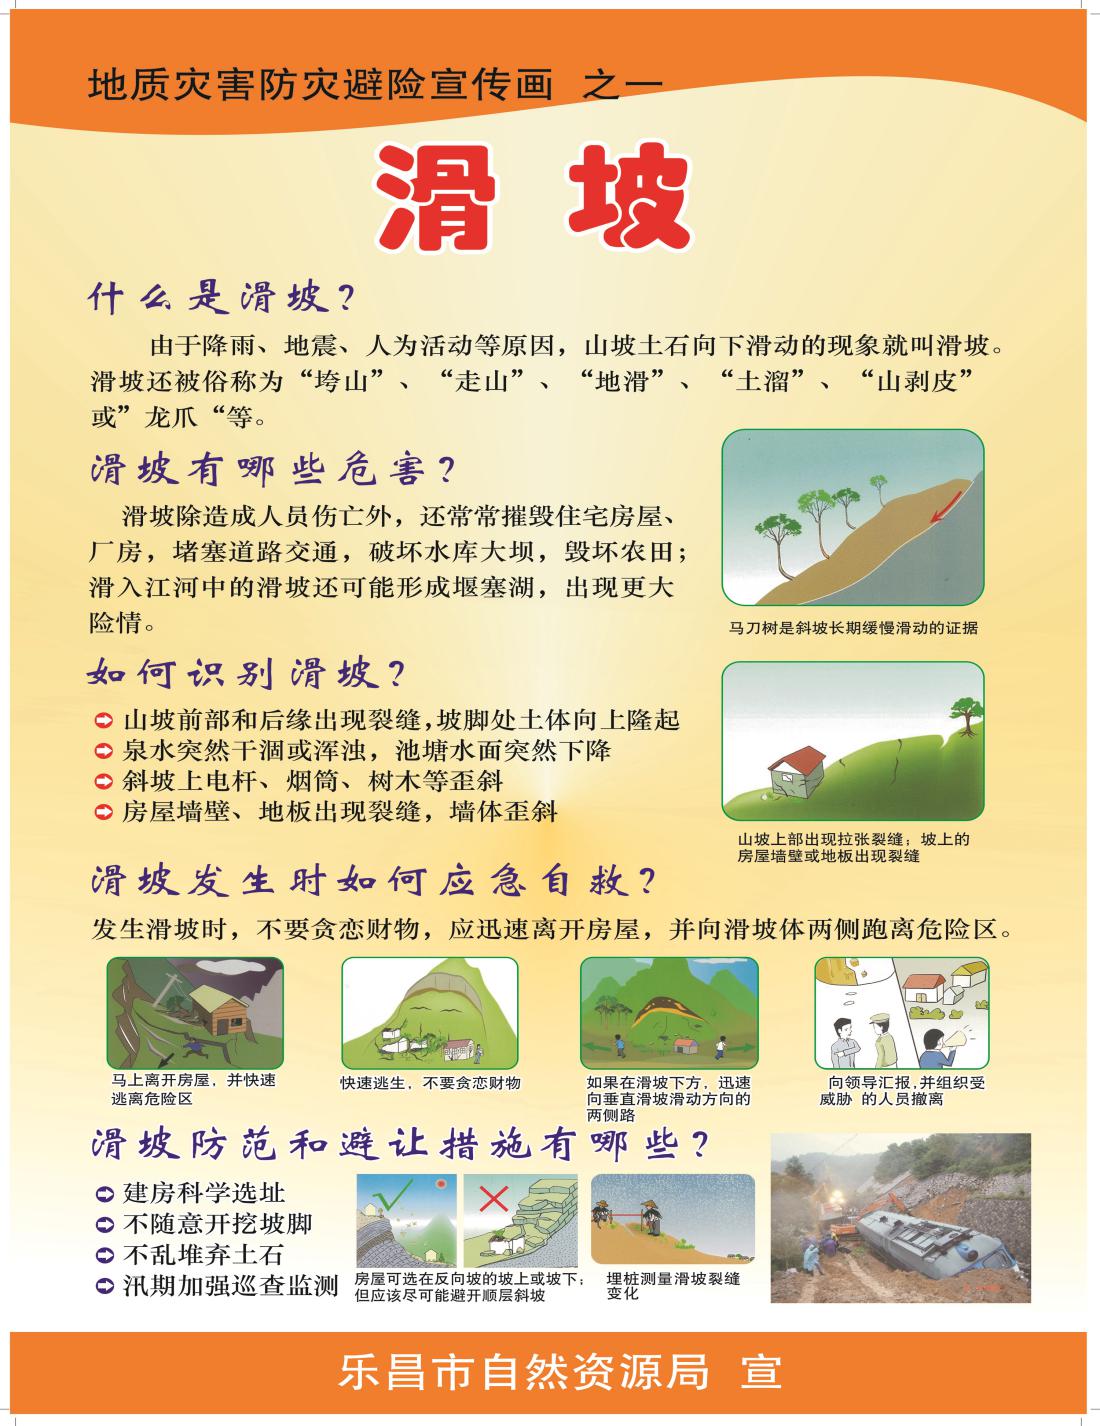 乐昌市自然资源局开展图说地质灾害防灾减灾知识宣传活动